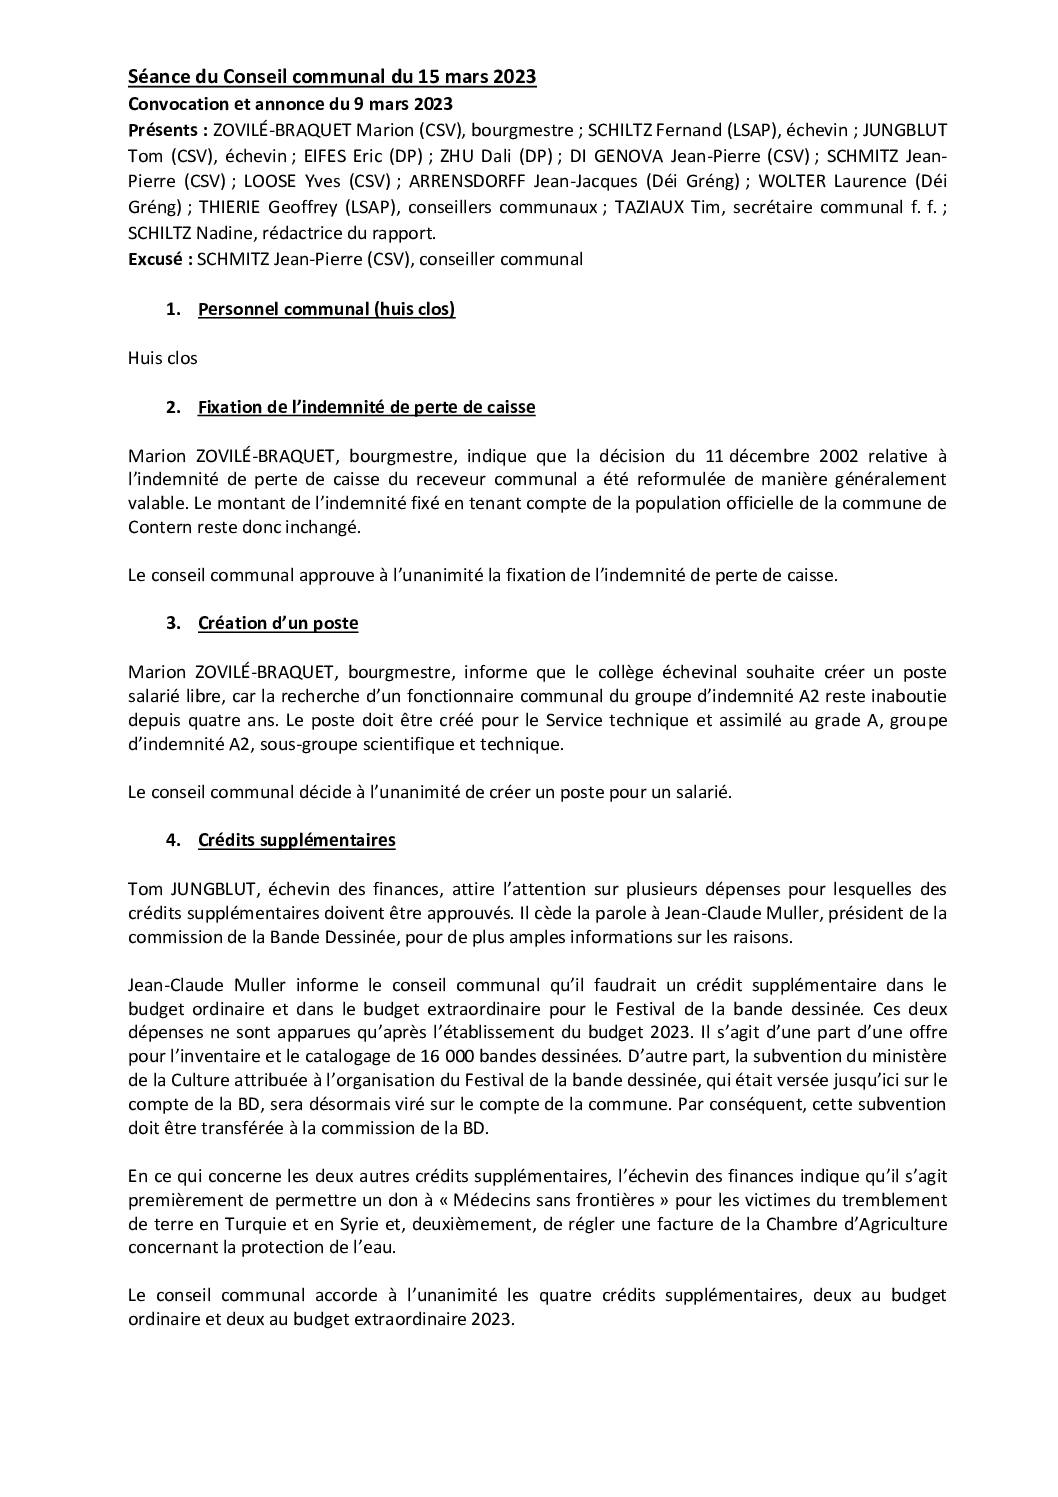 2023-03-15-Rapport-du-Conseil-communal